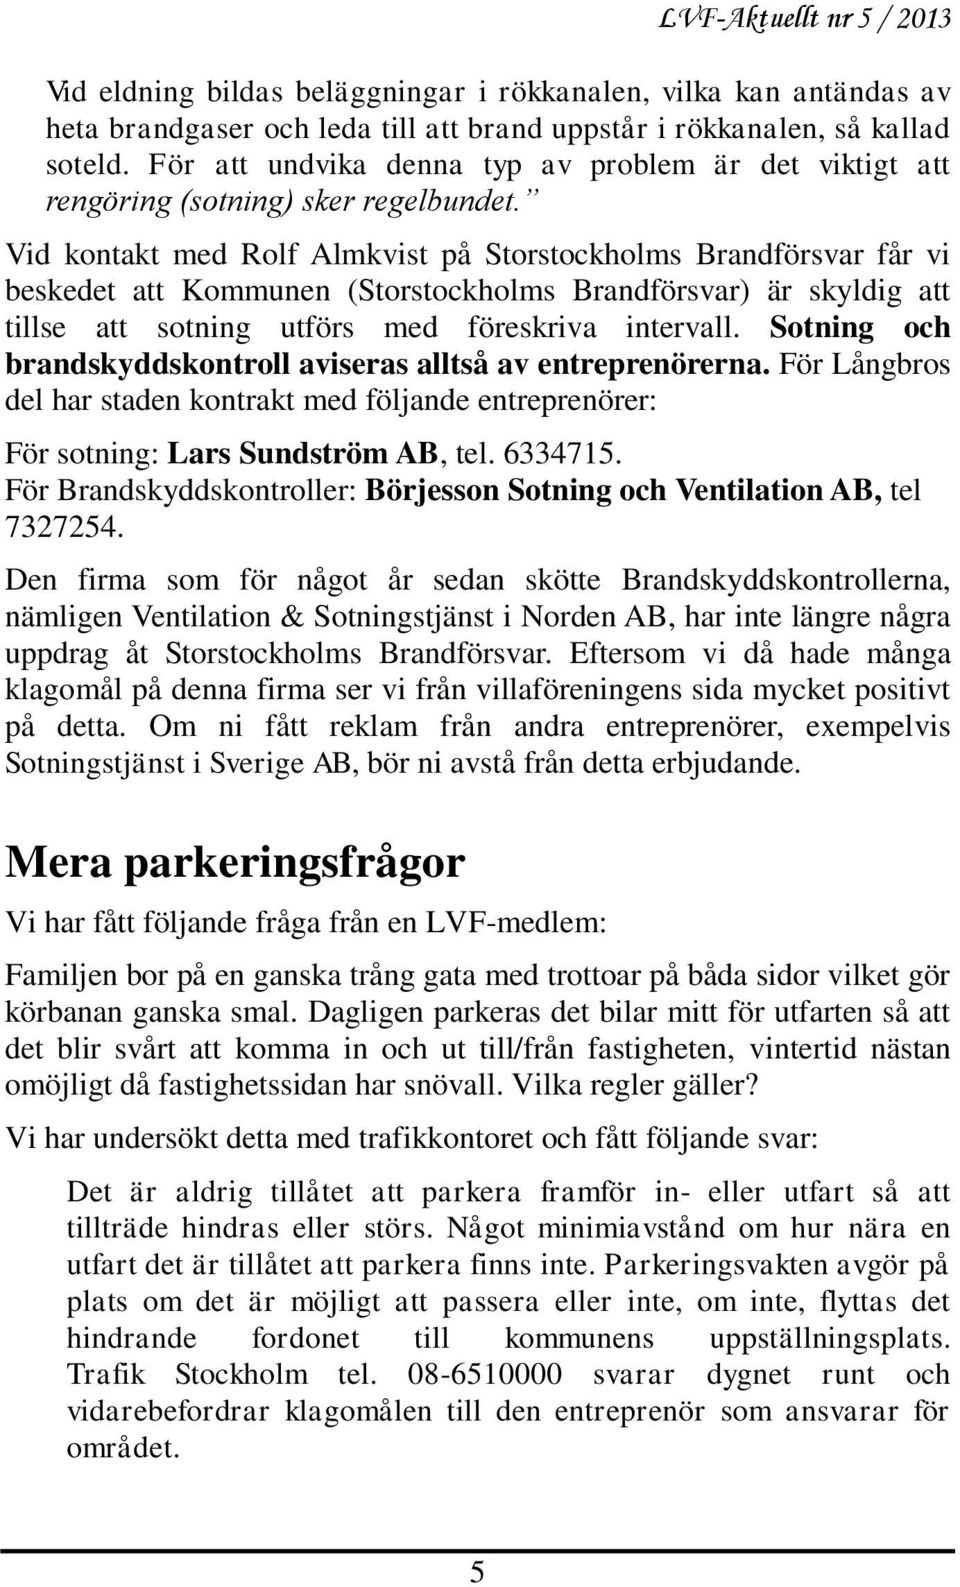 Vid kontakt med Rolf Almkvist på Storstockholms Brandförsvar får vi beskedet att Kommunen (Storstockholms Brandförsvar) är skyldig att tillse att sotning utförs med föreskriva intervall.